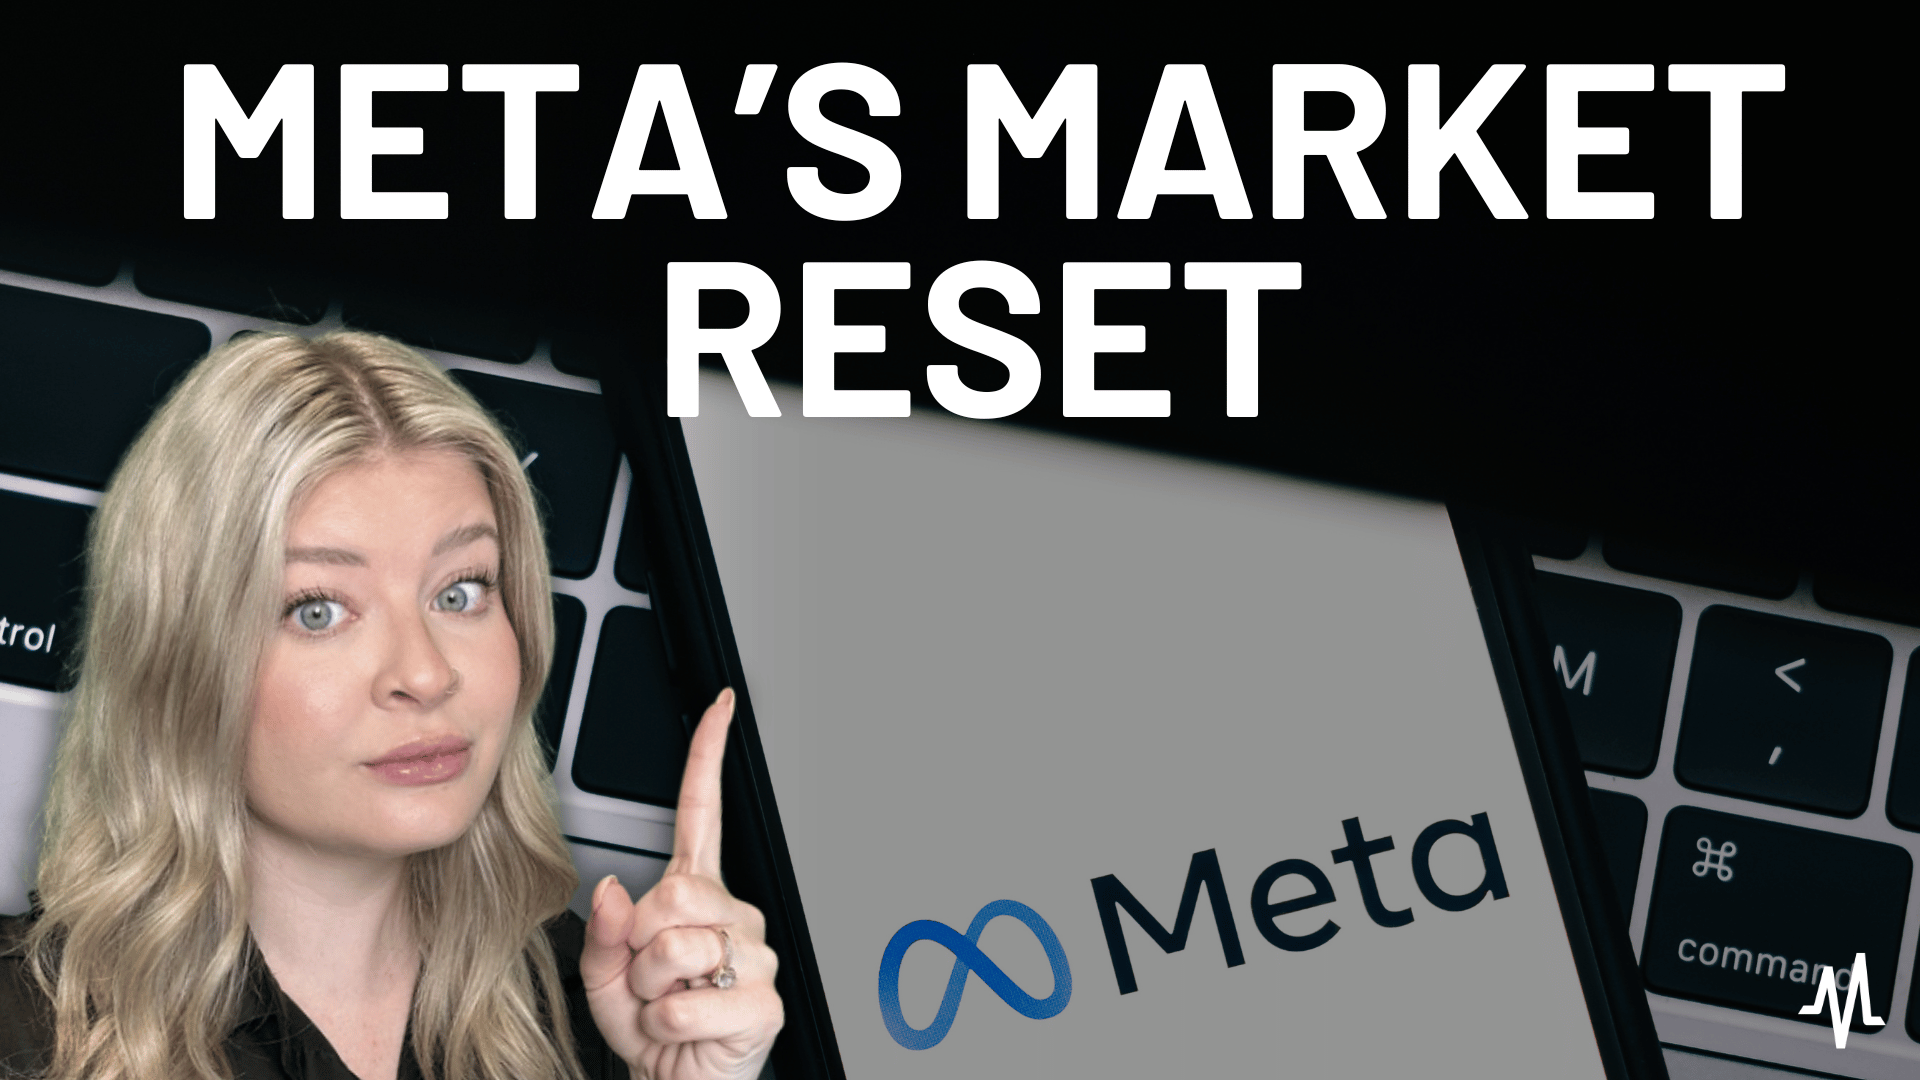 Mega Market Reset for Meta Platforms Stock